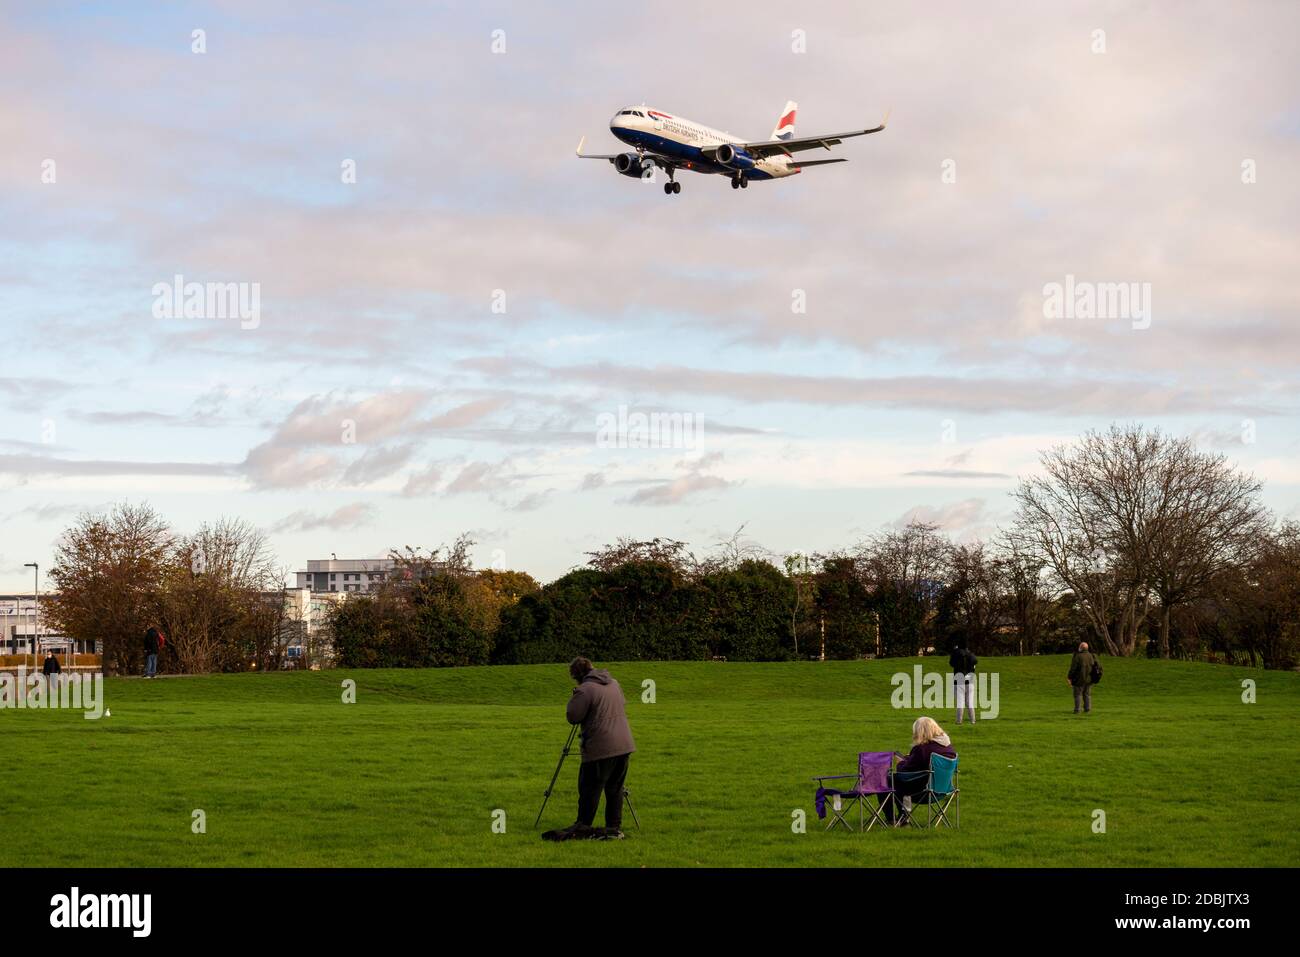 Gli appassionati di aerei, appassionati di aviazione, nel parco spaziale verde vicino a Myrtle Avenue guardando un aereo di linea jet atterrando all'aeroporto di Londra Heathrow, Regno Unito Foto Stock